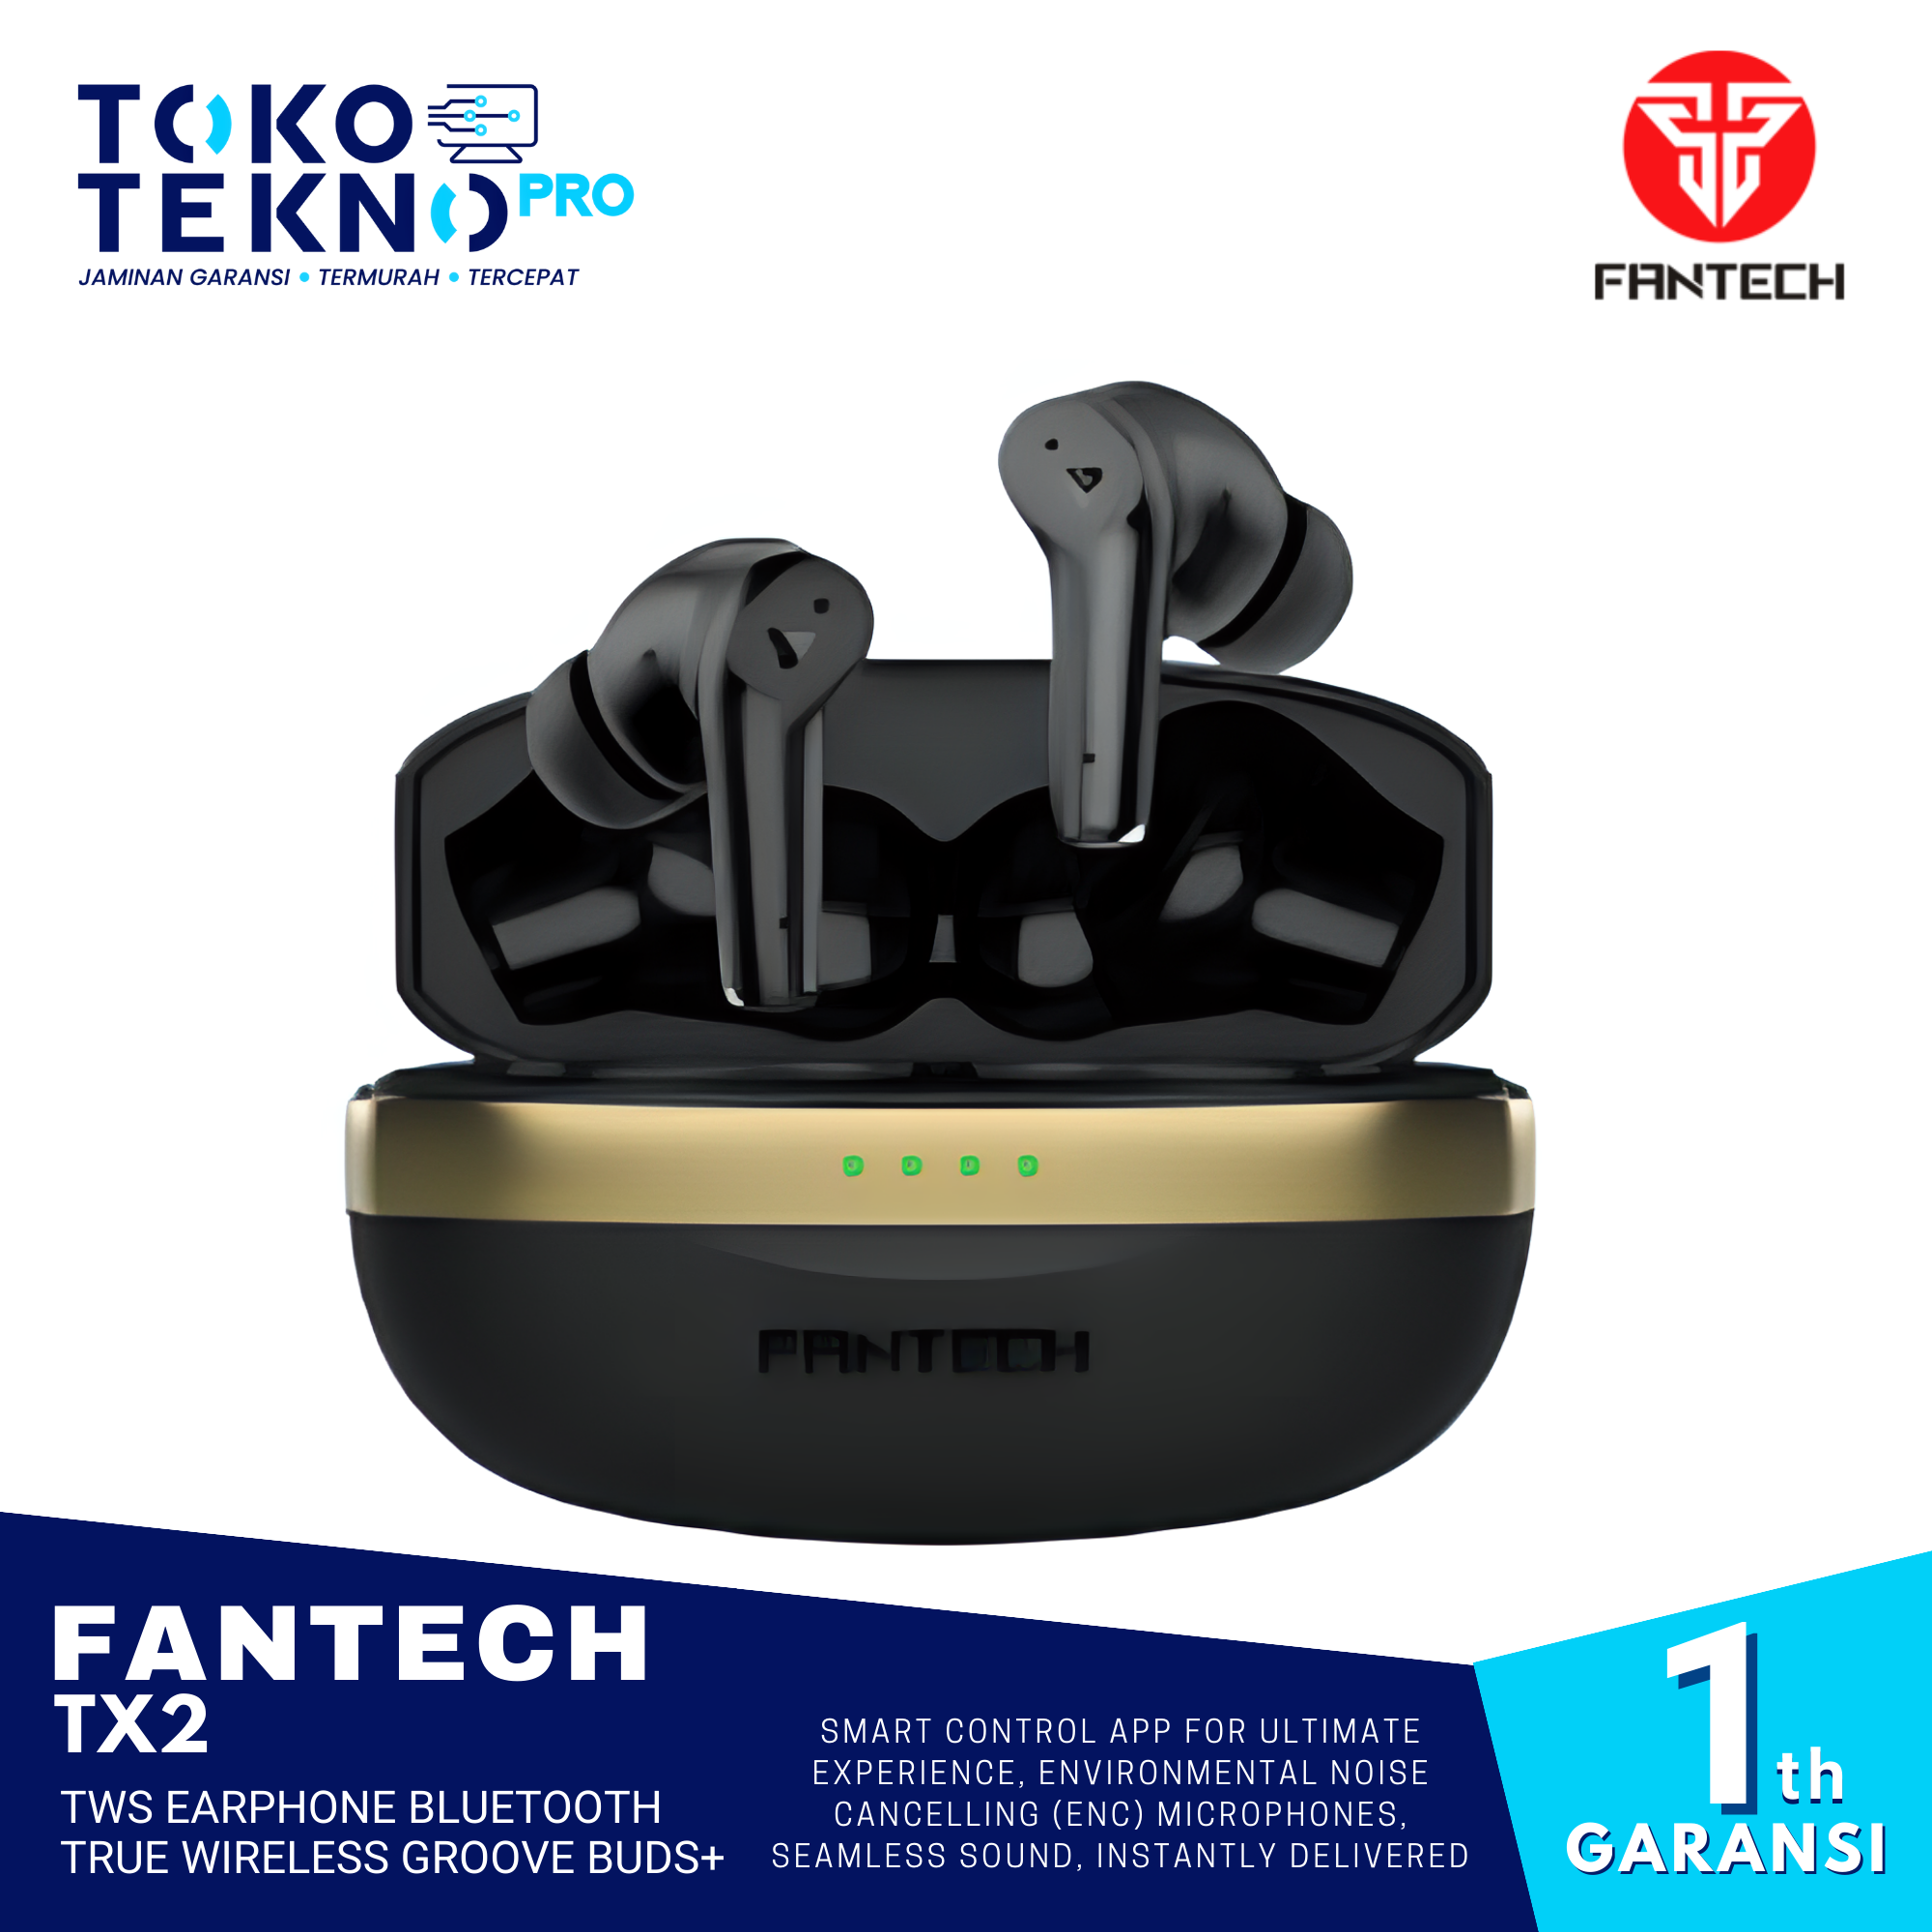 Fantech TX2 TWS Earphone Bluetooth True Wireless Groove Buds+